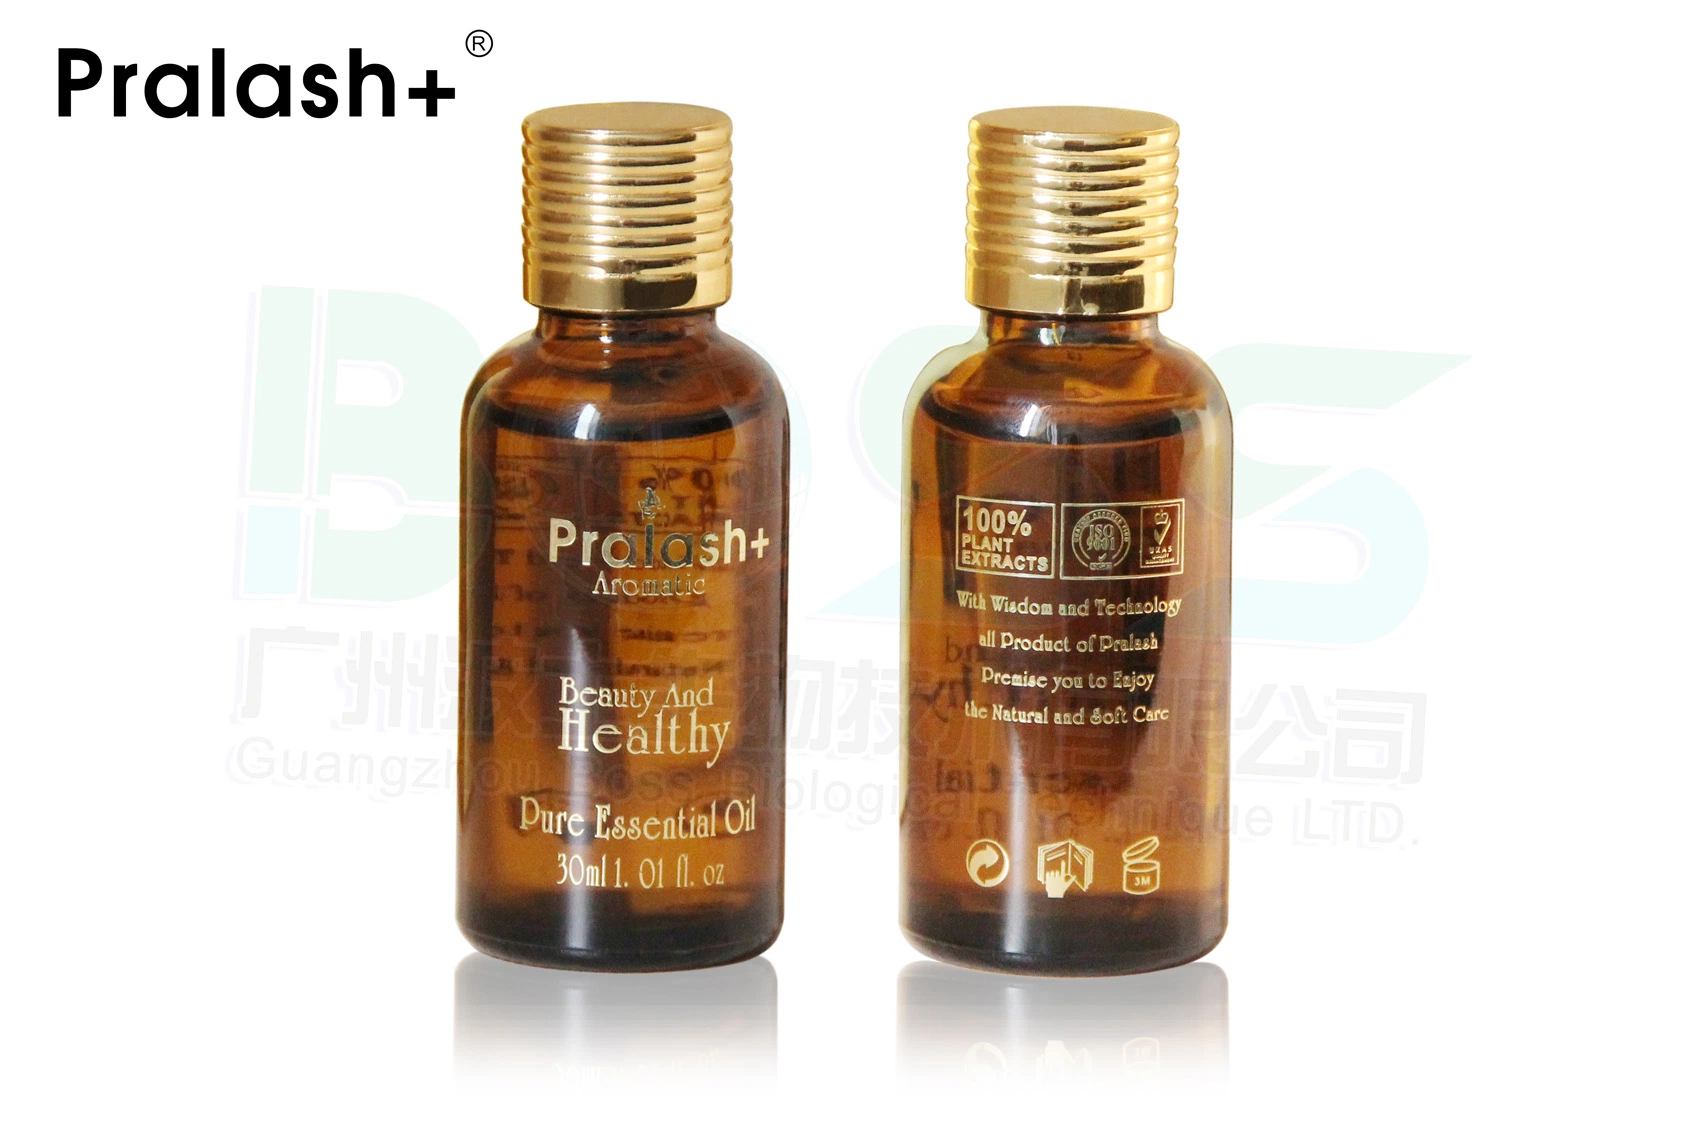 Pralash+ sein Enhancer huile essentielle sein Agrandir l'huile naturellement essentielle Extrait de plante pour améliorer le lissage de courbe et le lissage